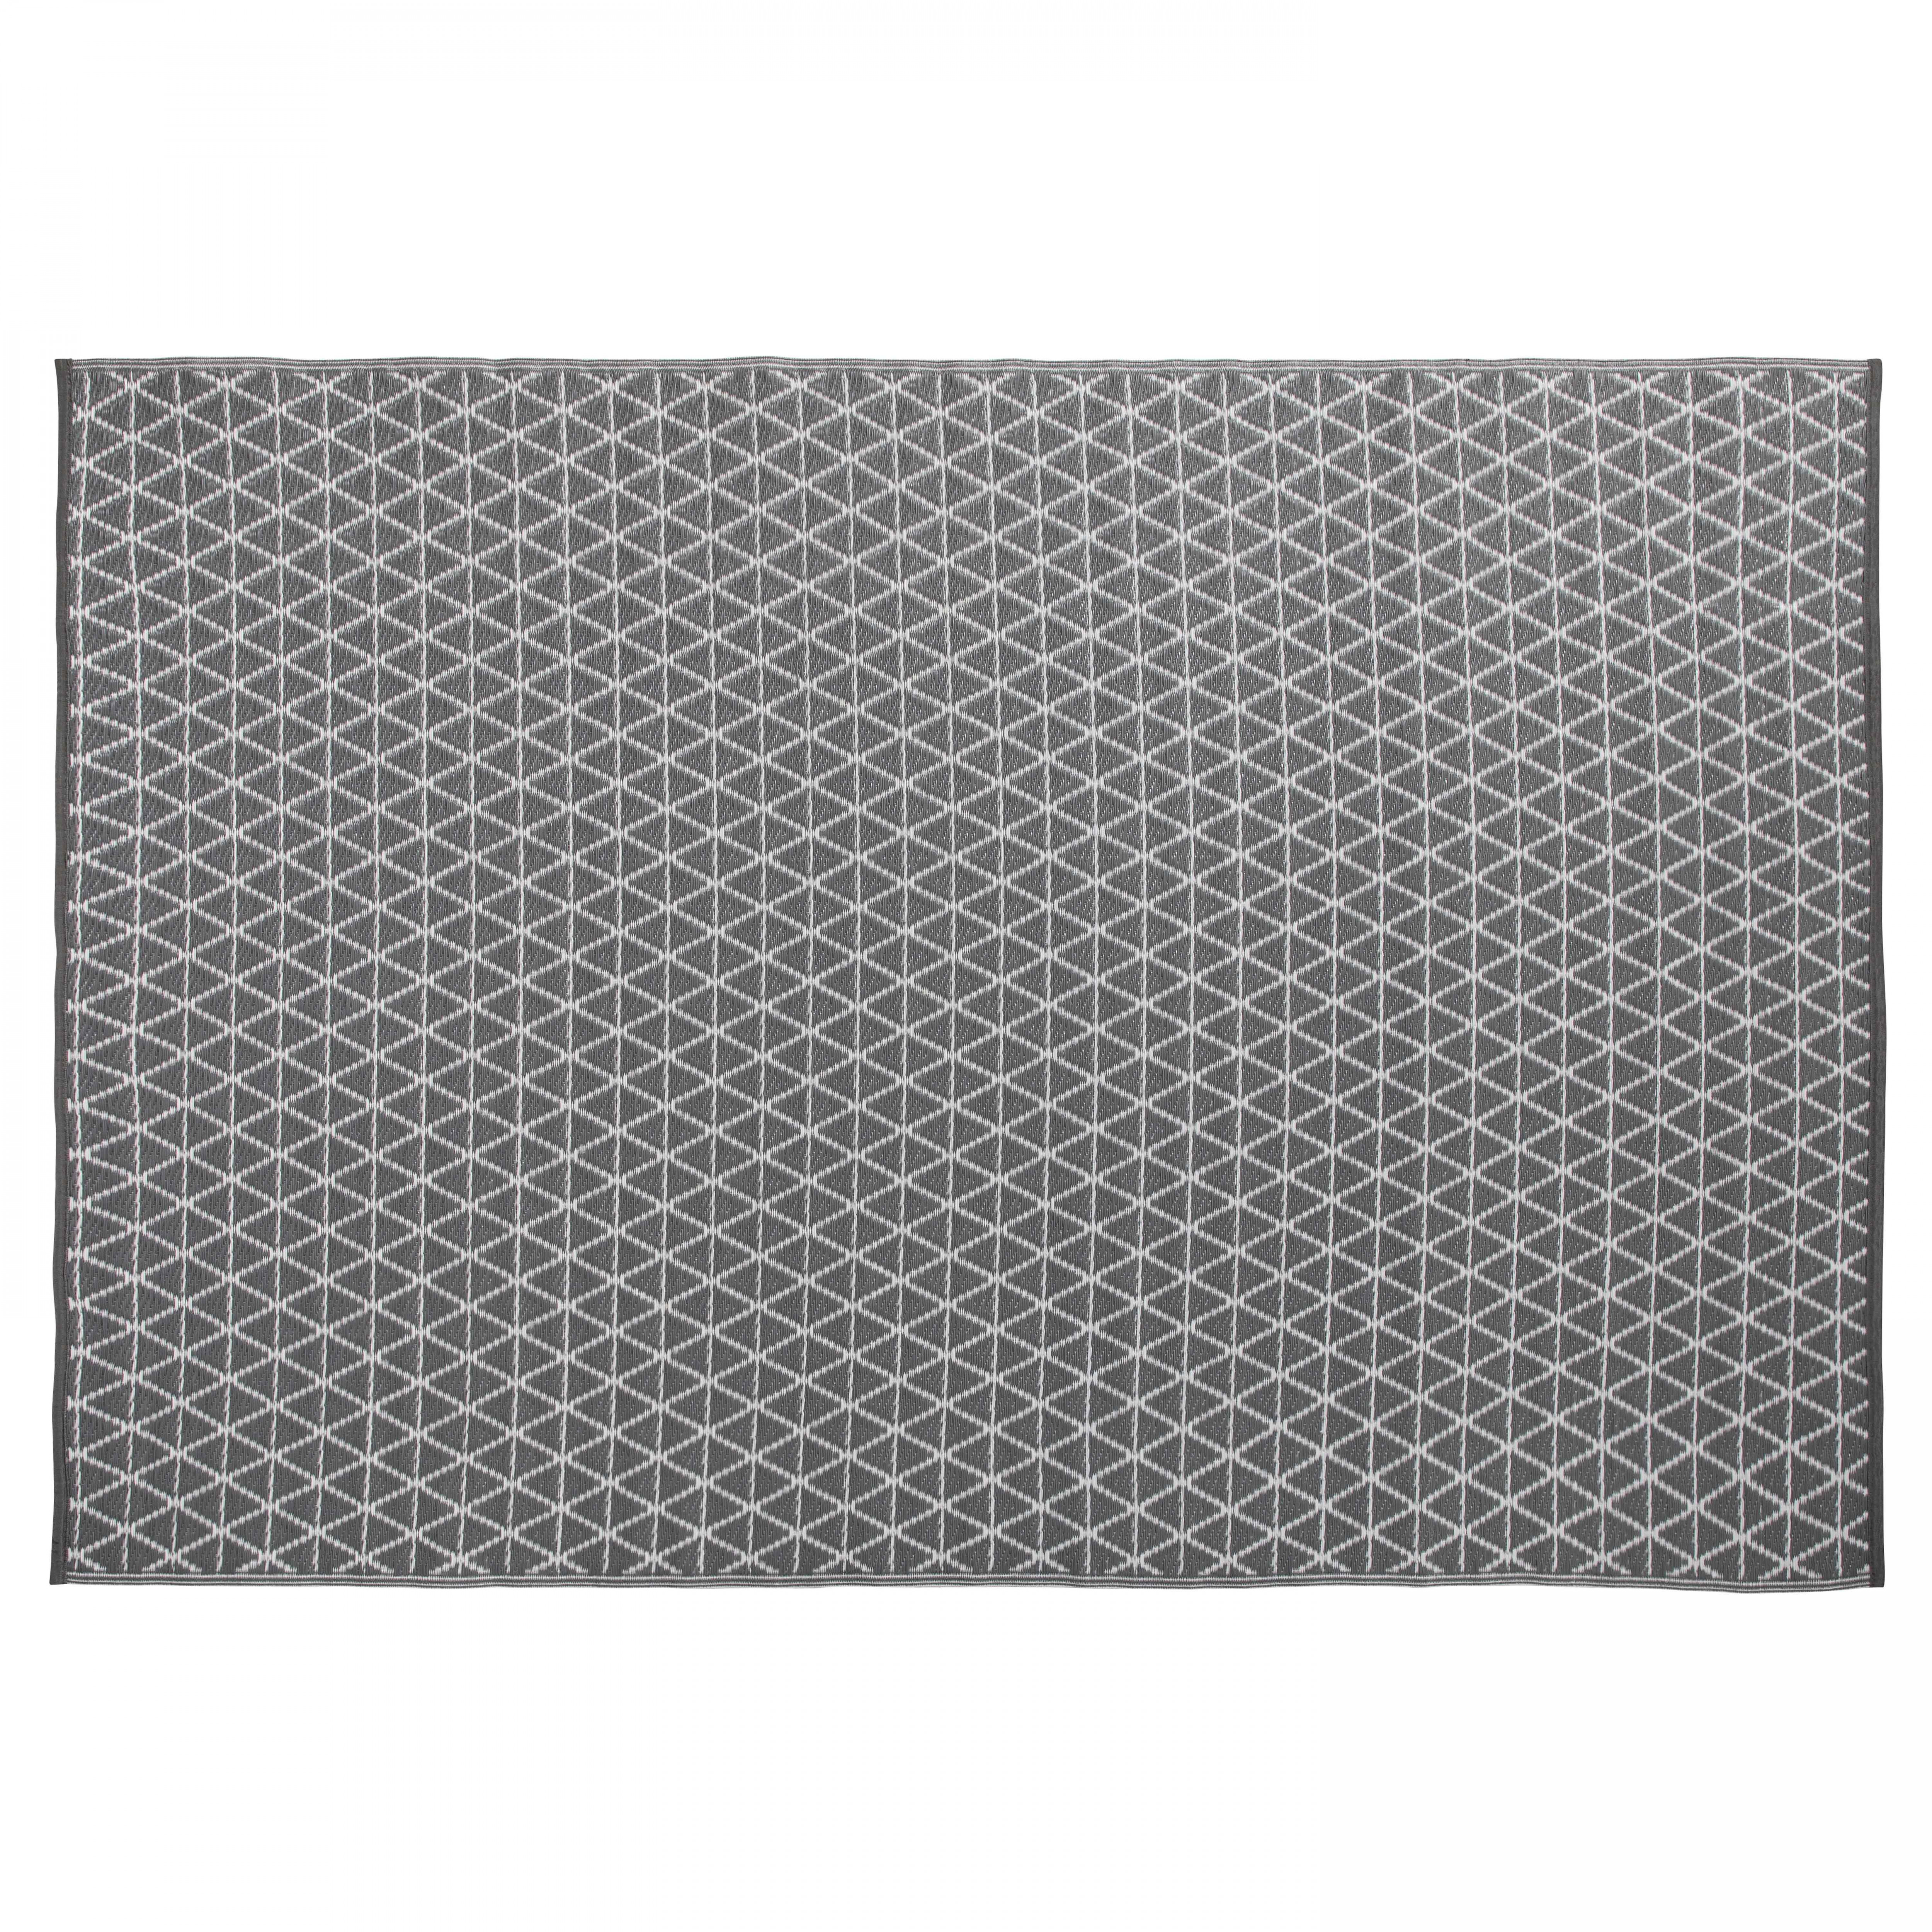 Tapis d'extérieur rectangulaire en polypropylène - tressé gris et blanc